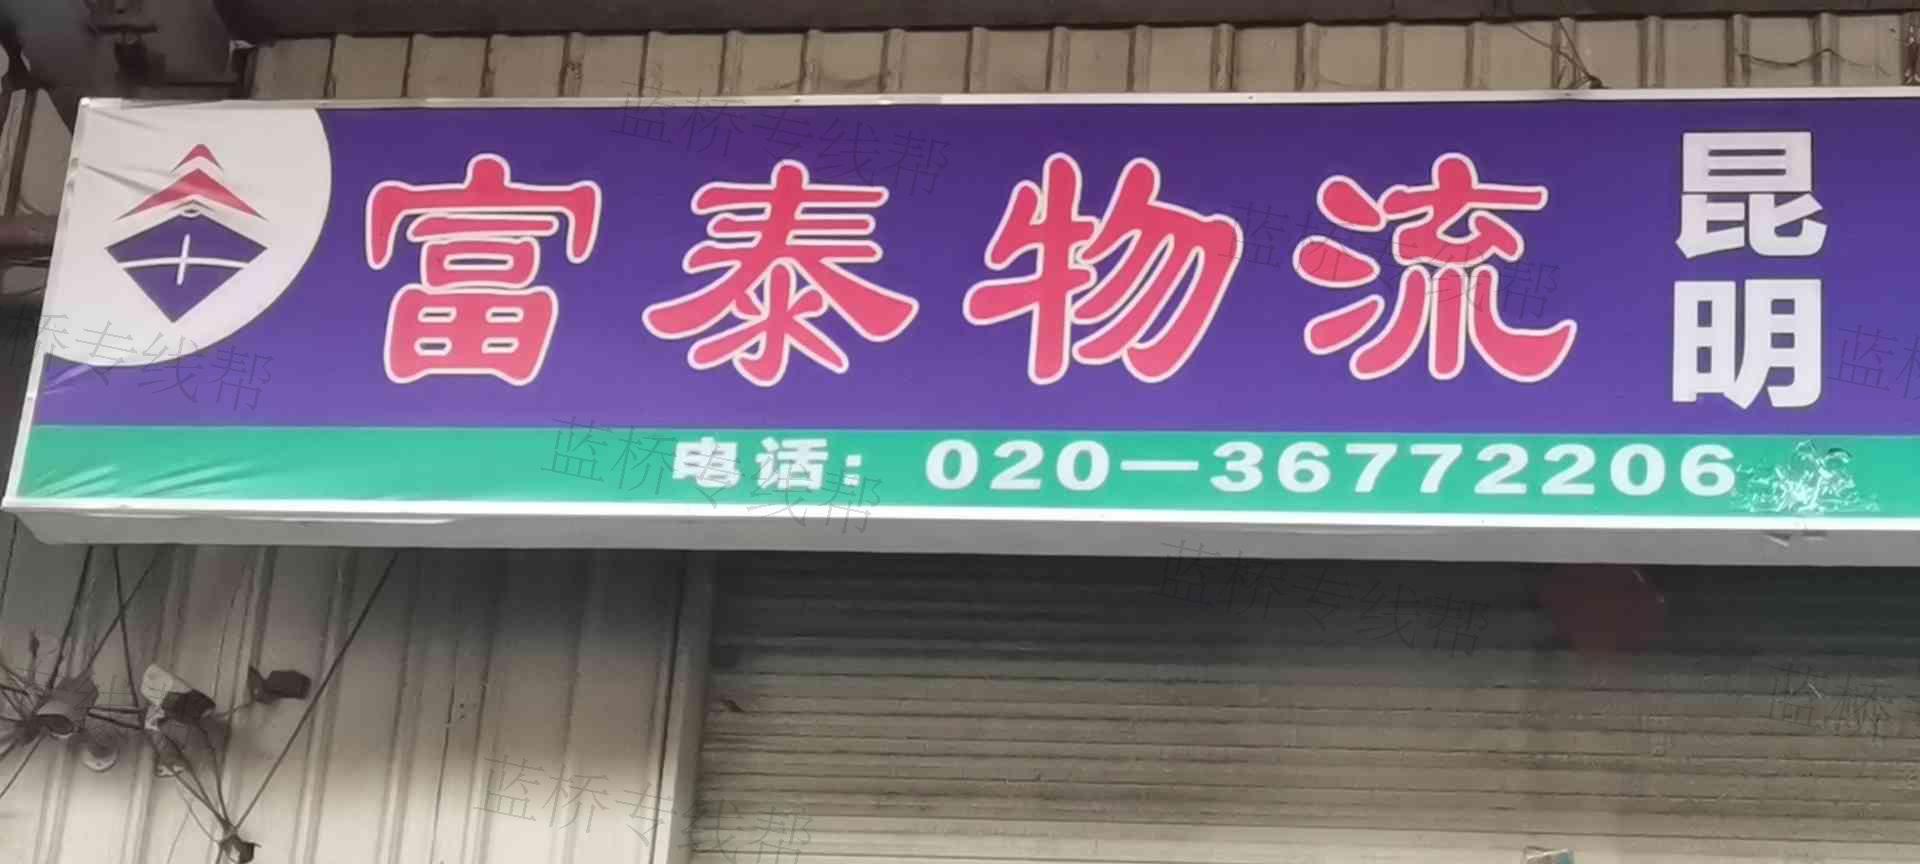 广州富泰供应链有限公司